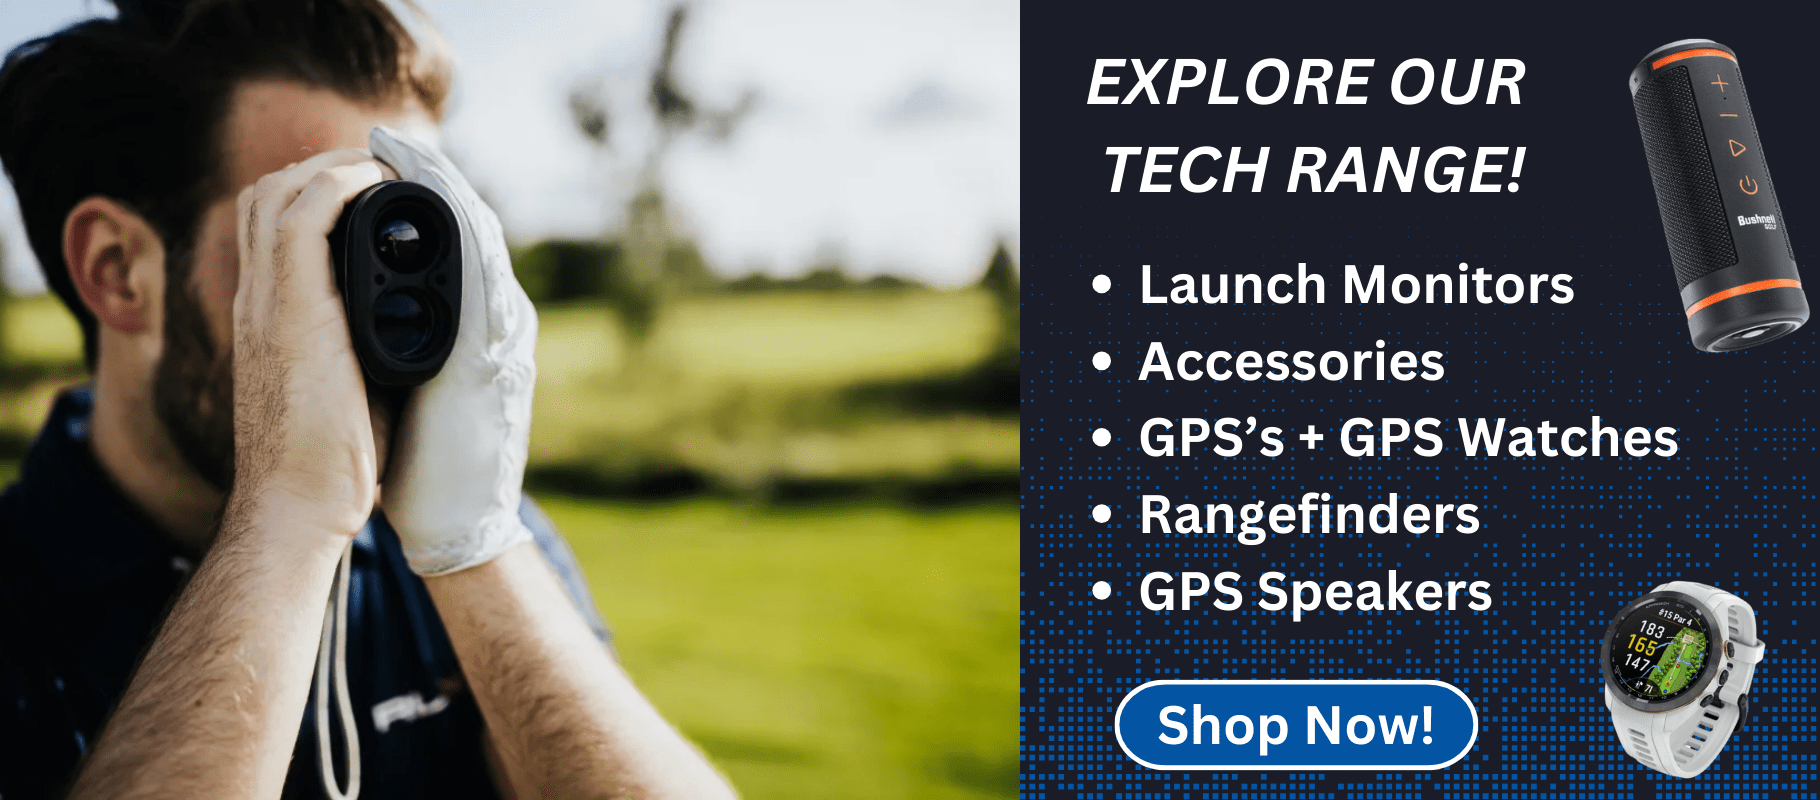 Explore our Tech Range